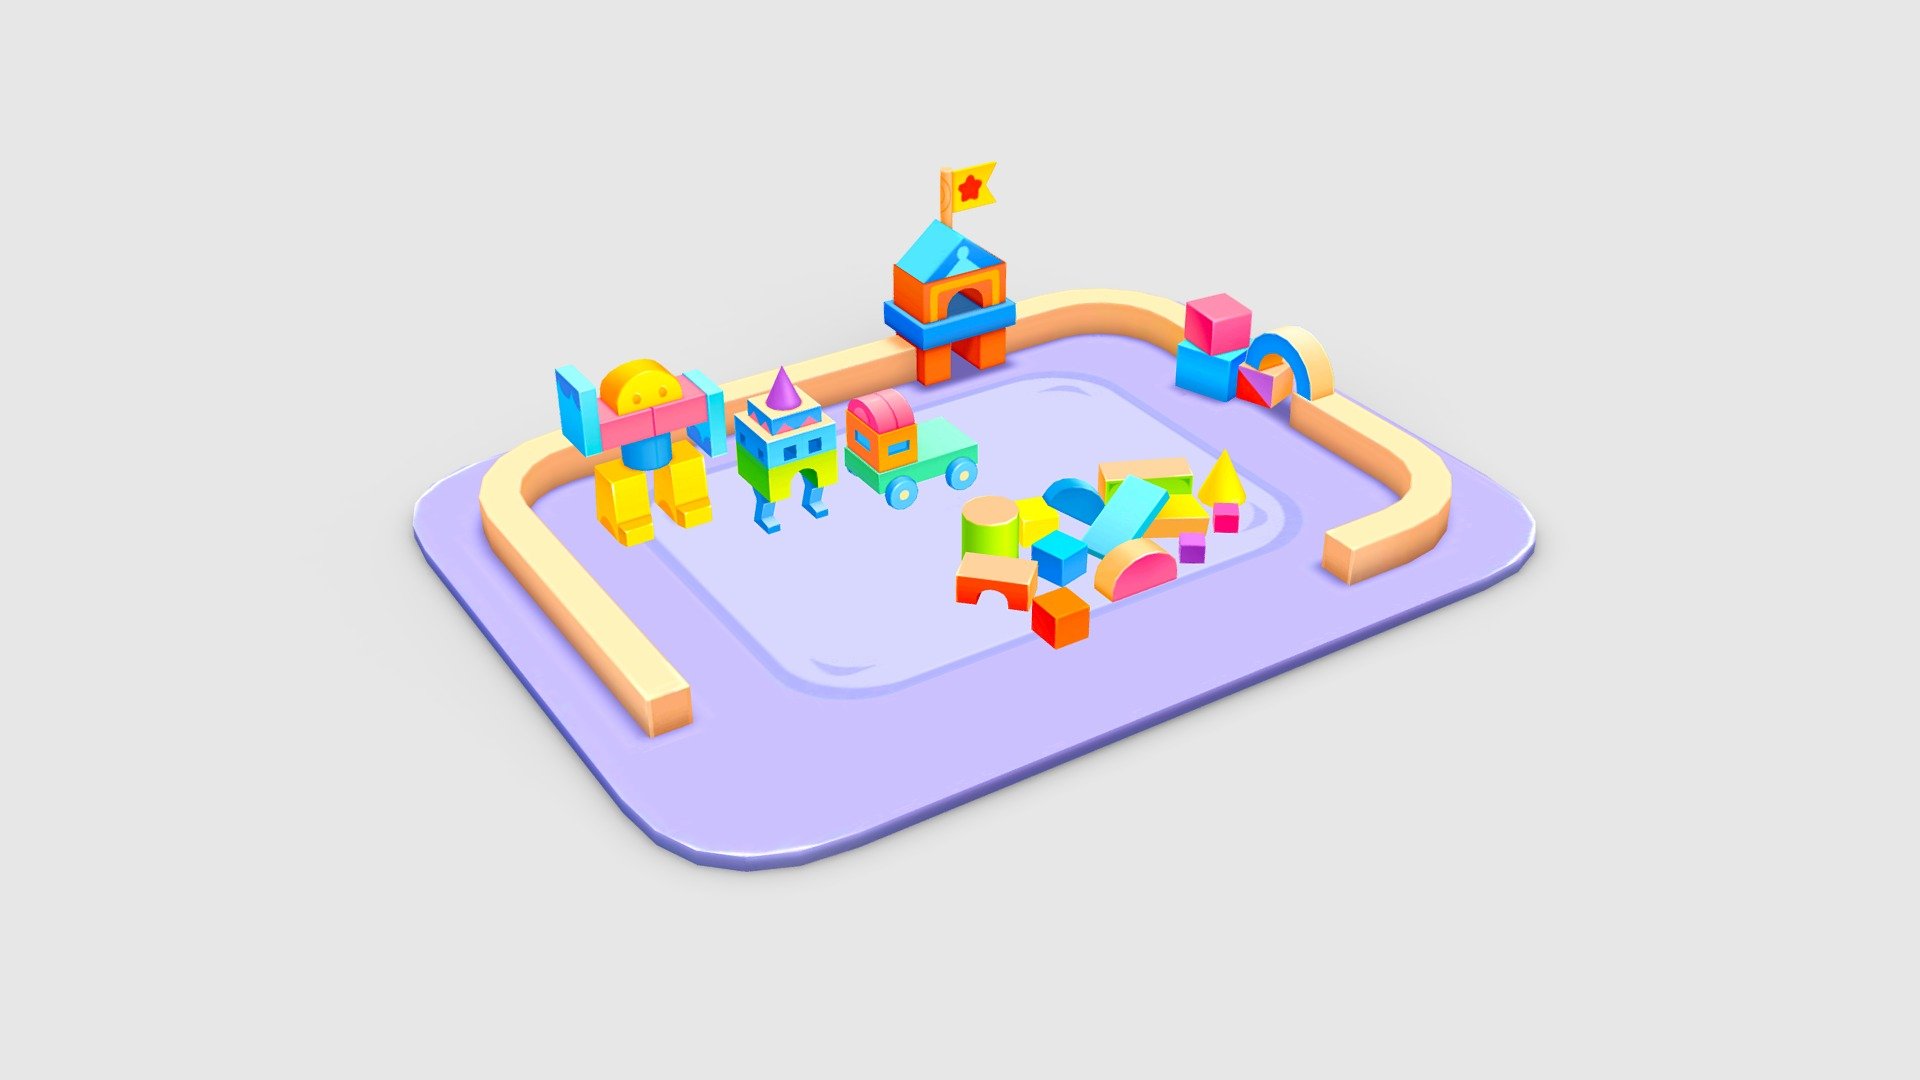 A bunch of building block toys Low-poly 3D model - A bunch of building block toys - 3D model by ler_cartoon (@lerrrrr) 3d model